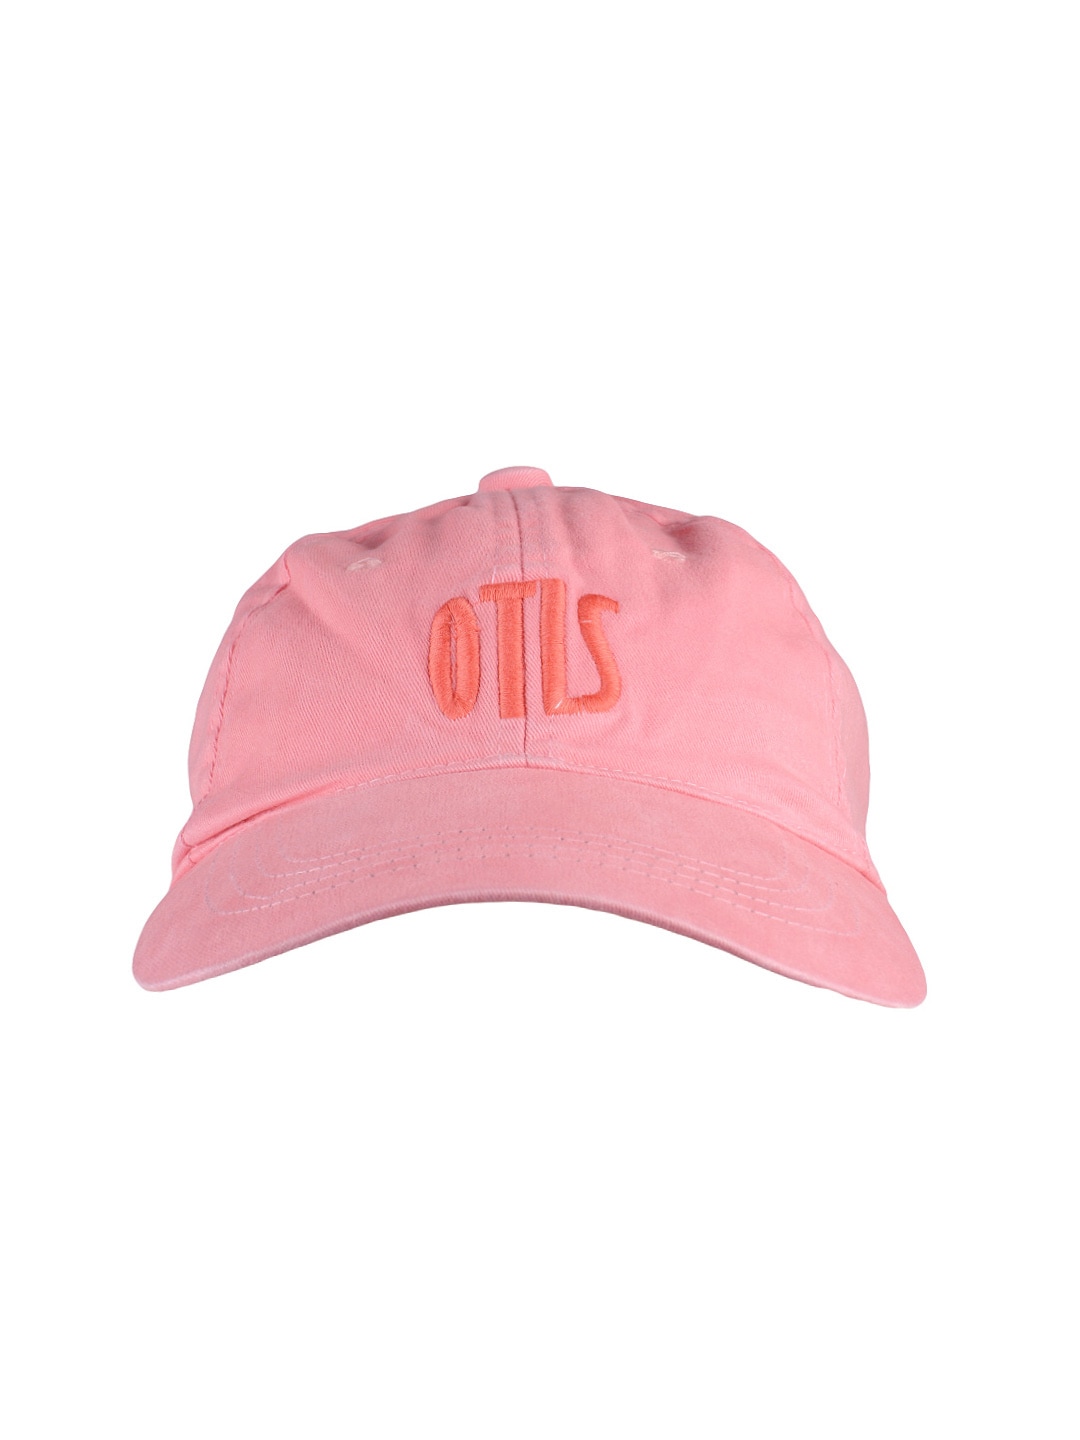 OTLS Unisex Pink Cap